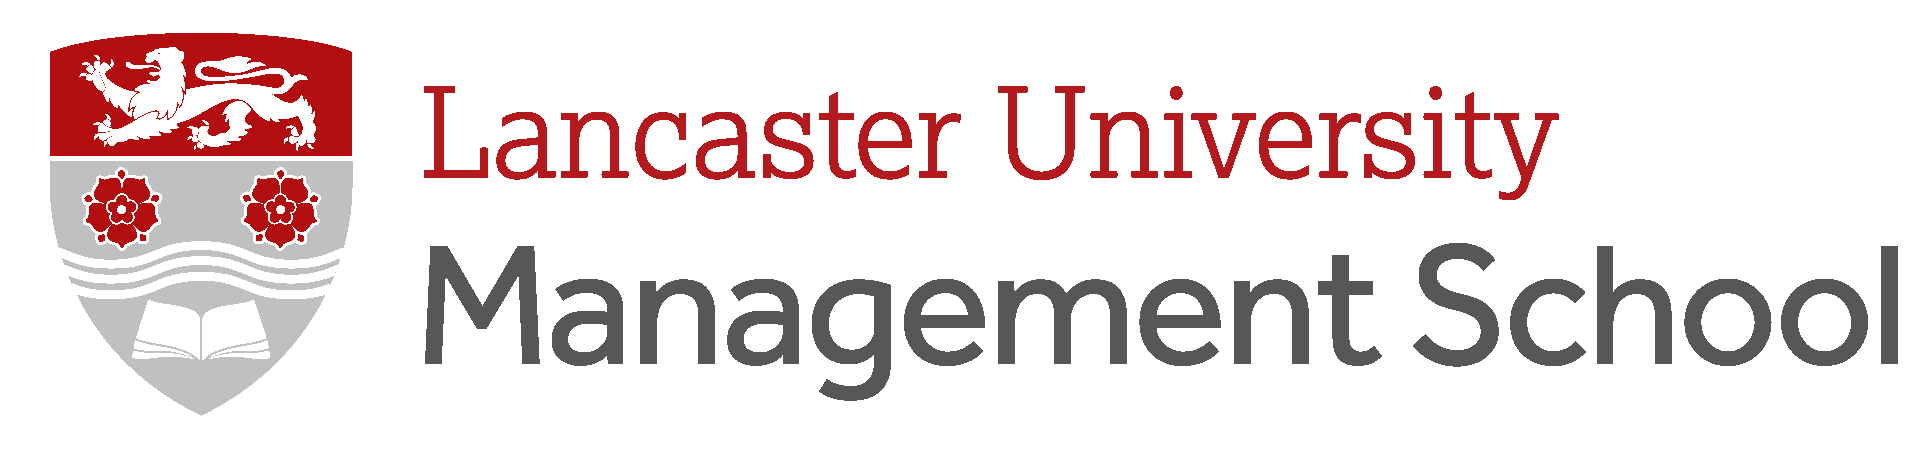 Lancaster University Management School 